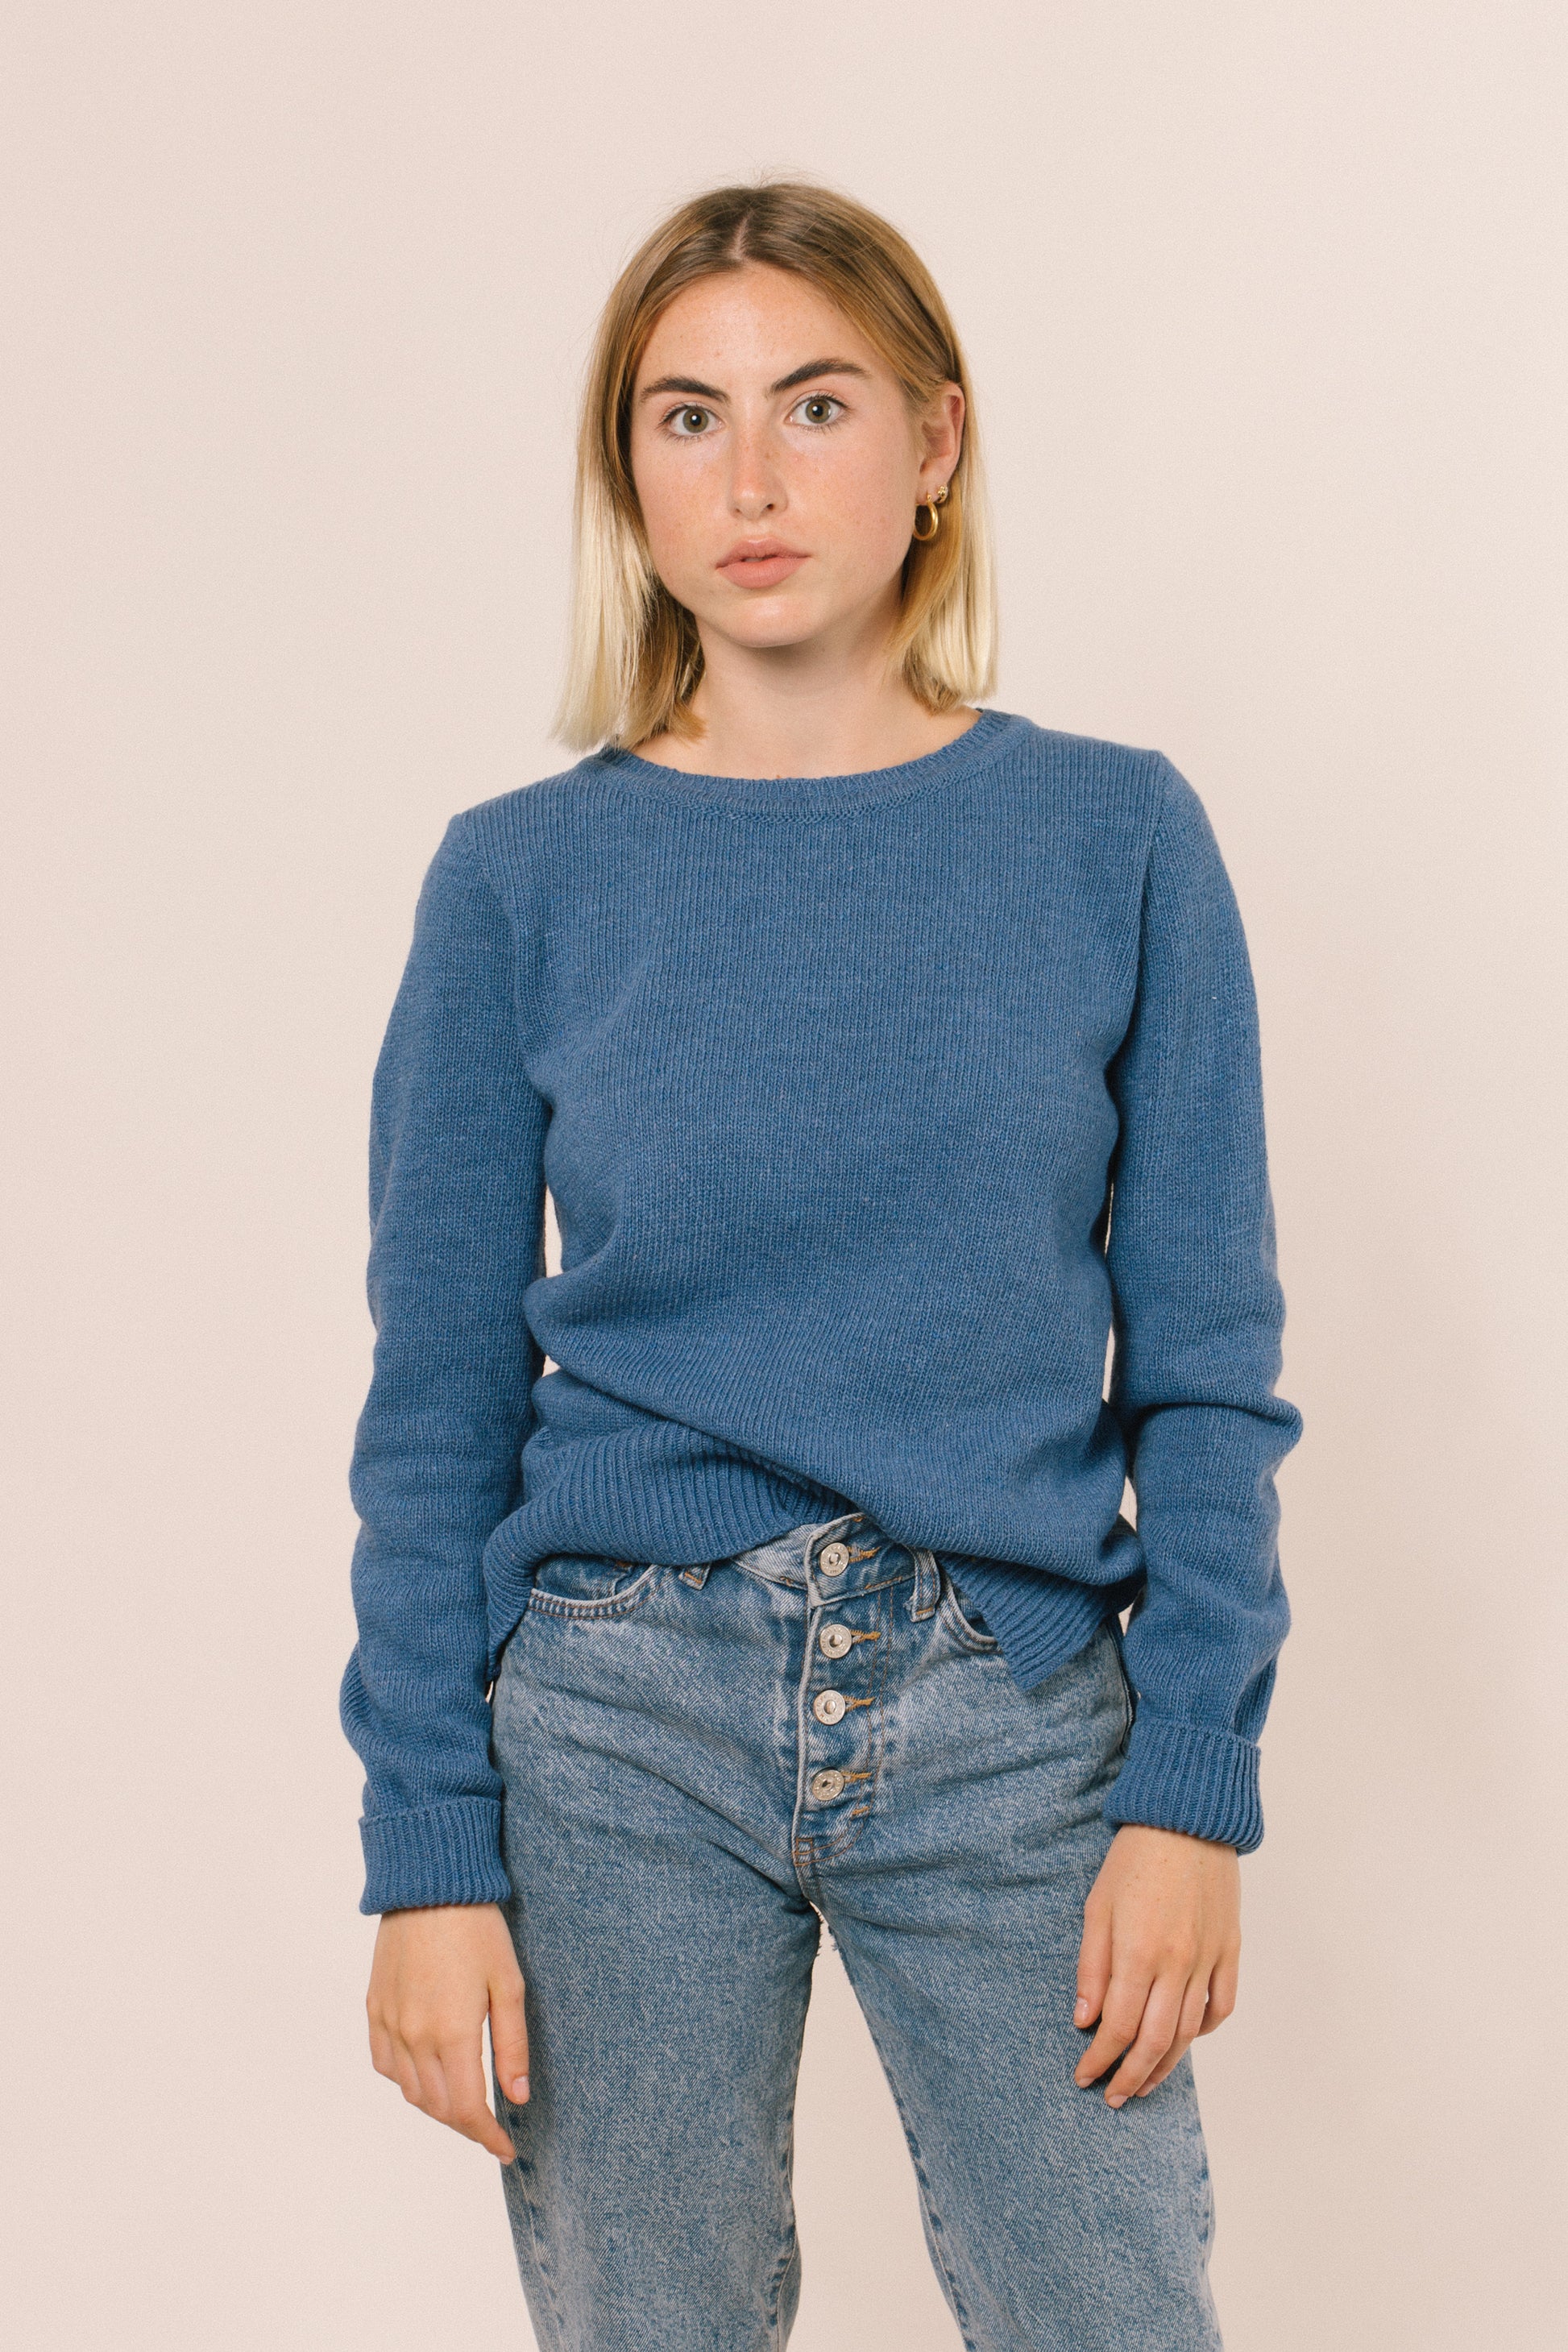 La model de front. La forma del jersei és bàsica i recta pel que queda bé en tots els cossos. El jersei té uns talls als costats a la part inferior.